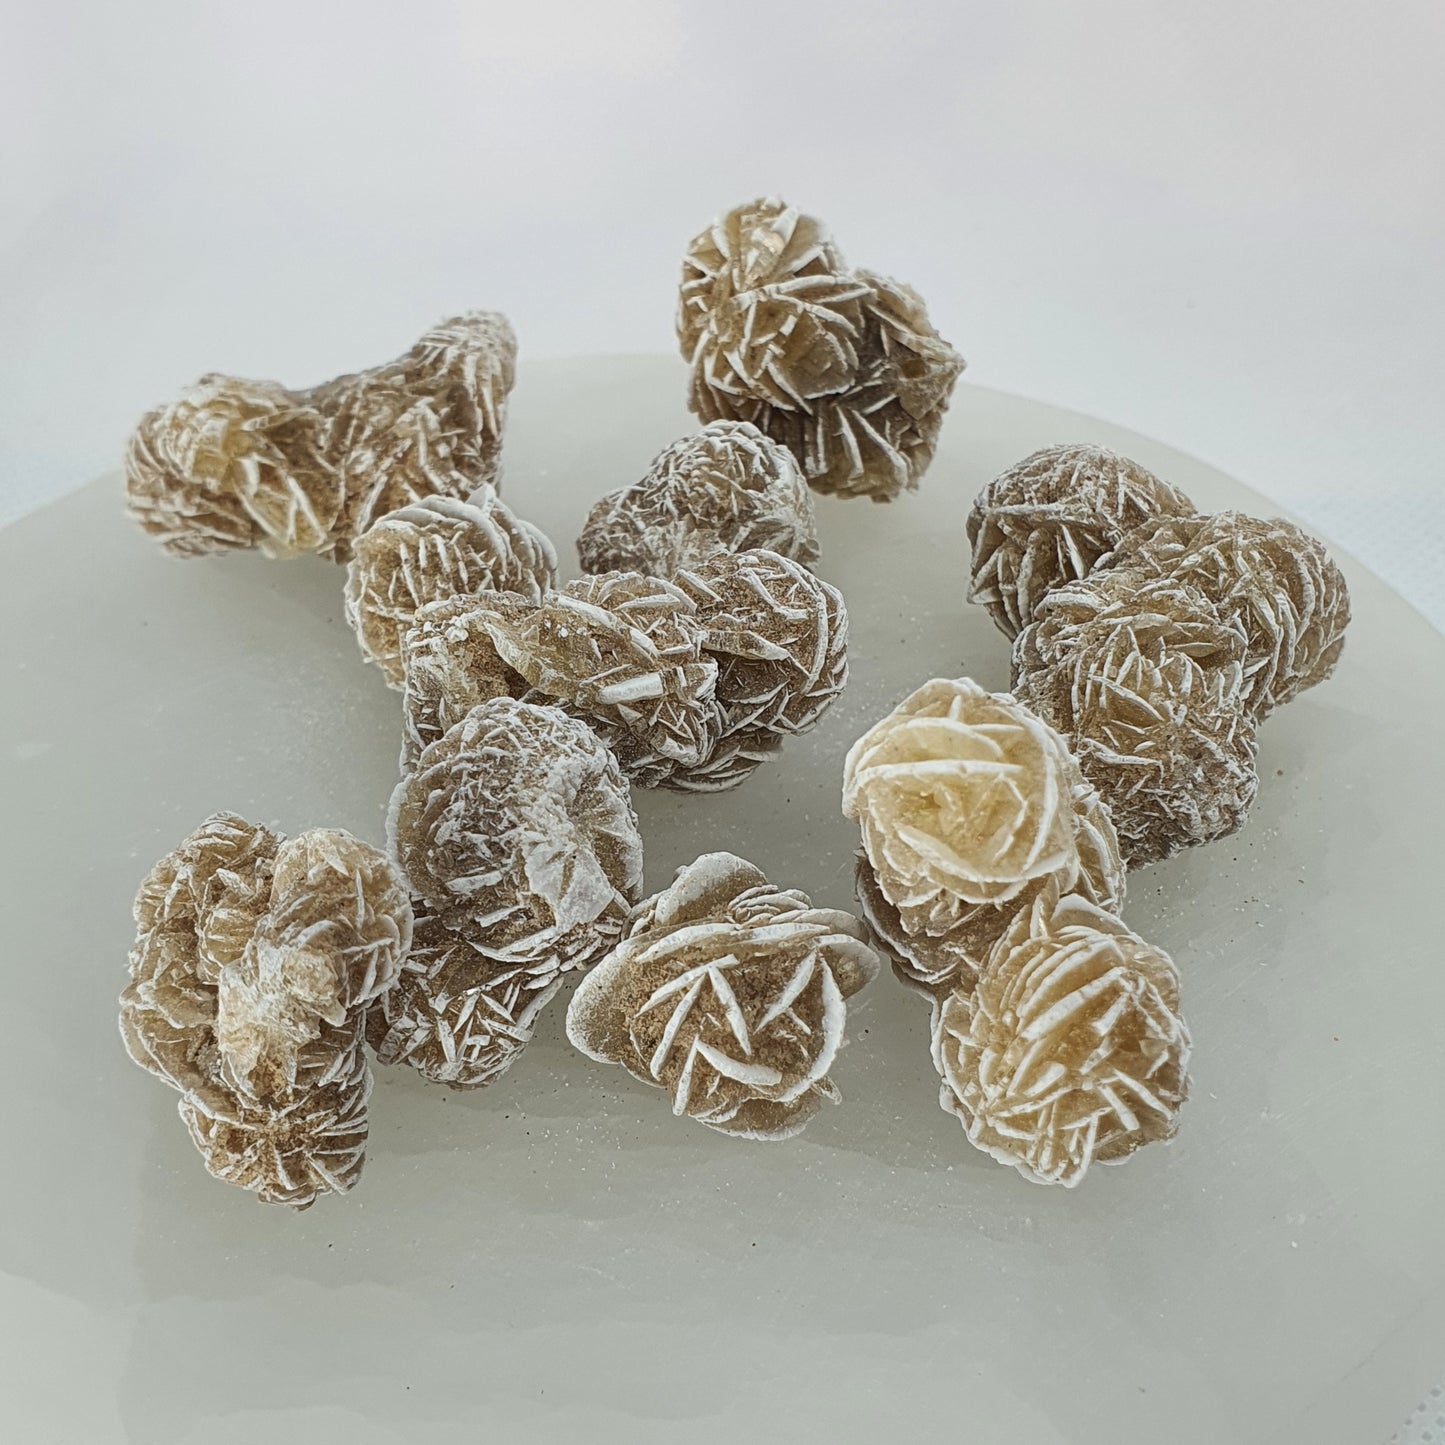 Crystals - Desert Rose (Selenite) - (Small)